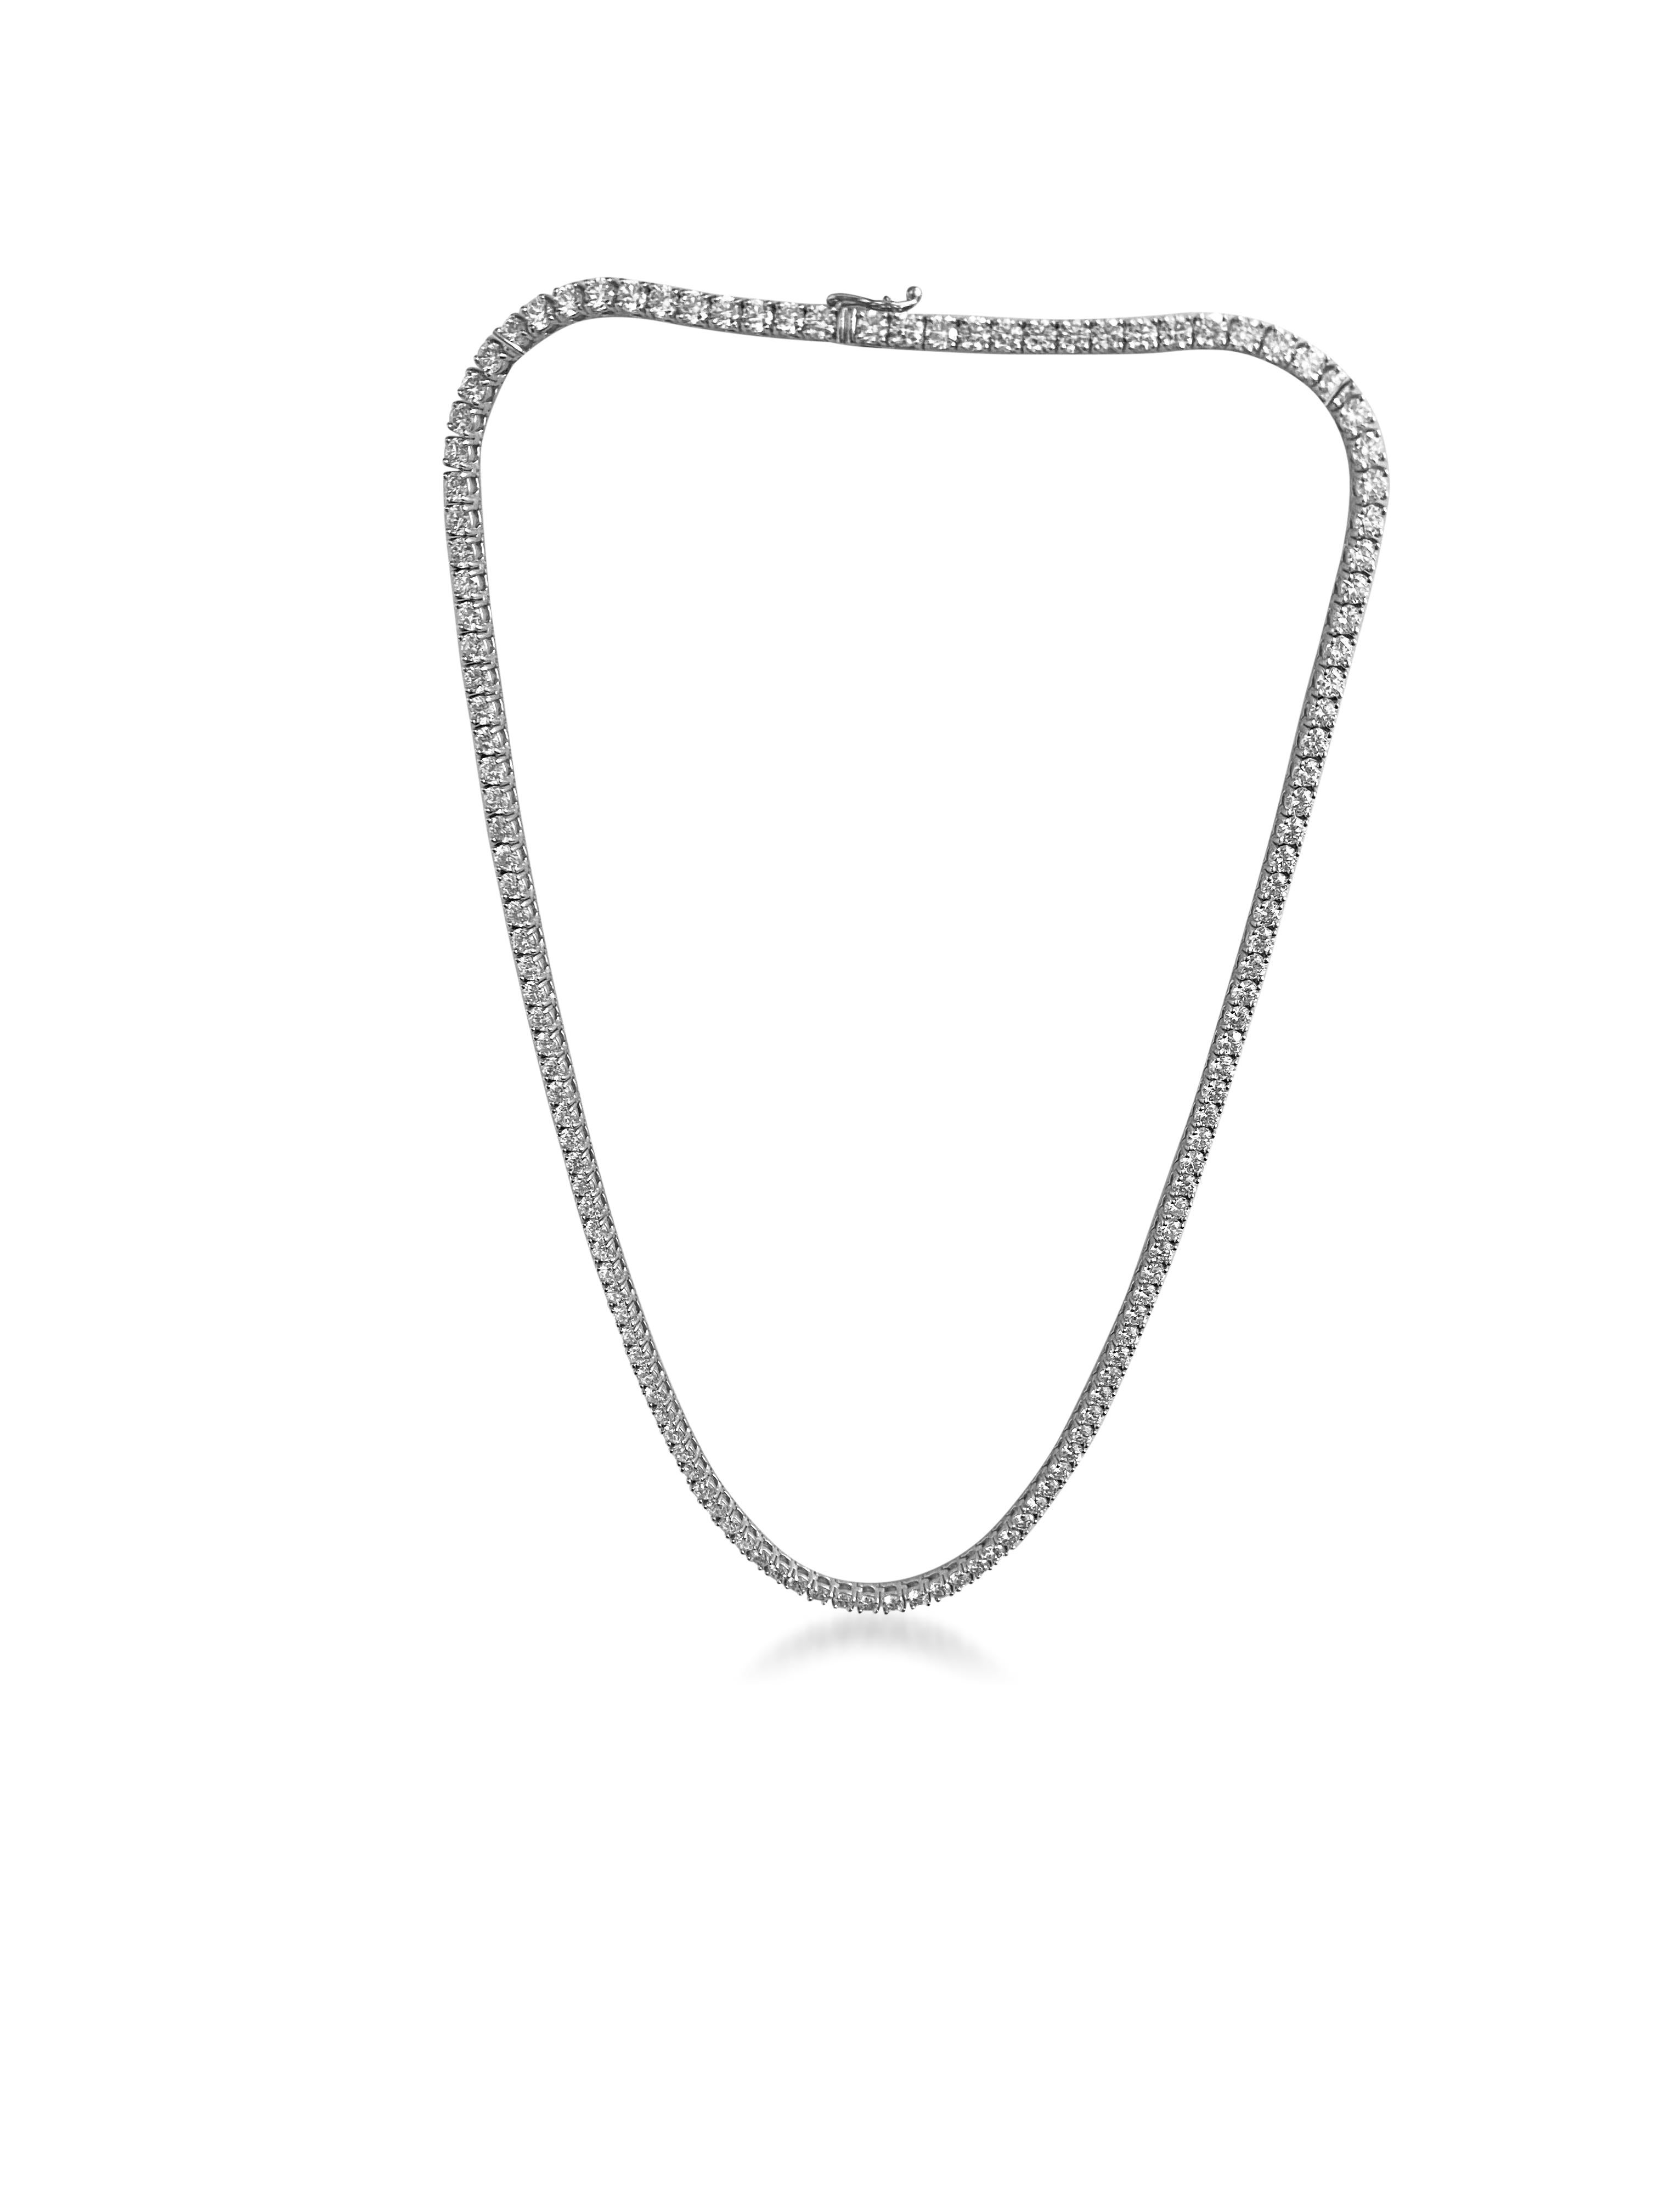 14.6ct VVS Diamond Tennis Necklace For Sale 2